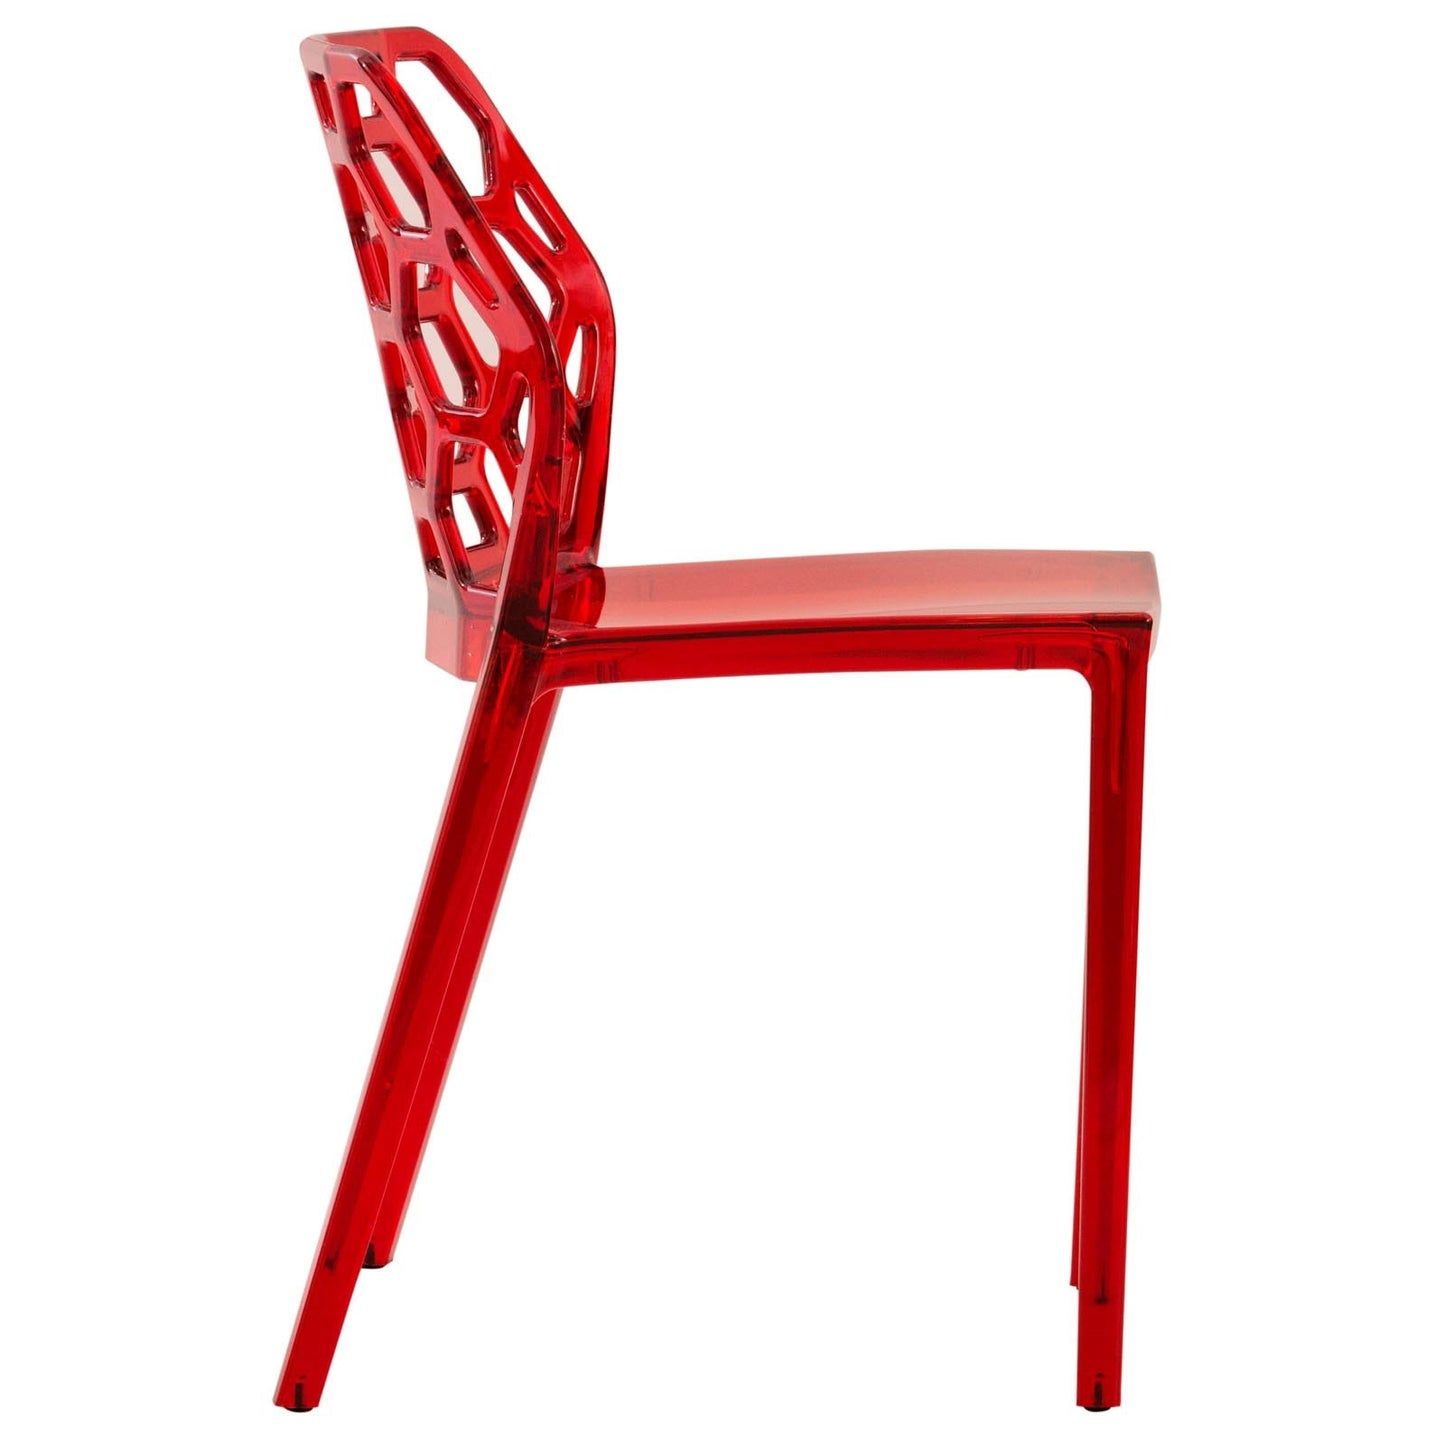 EMFURN Modern Dynamic Dining Chair